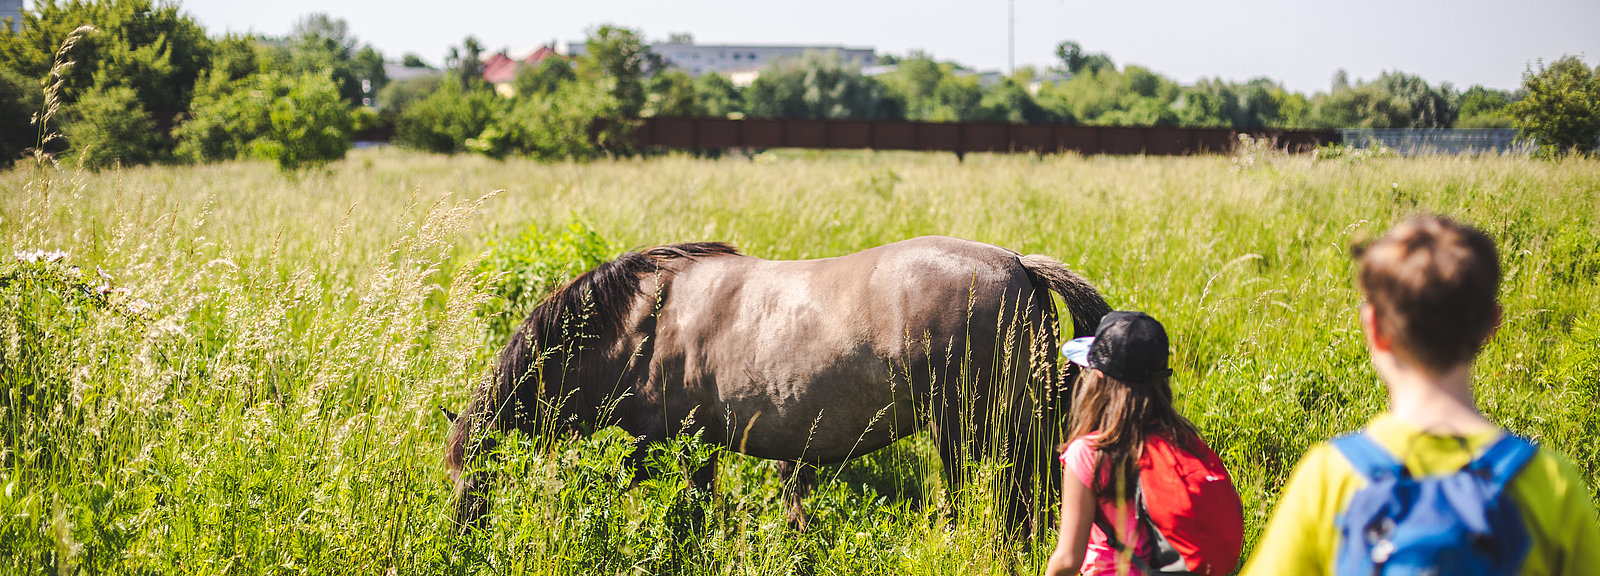 Zwei Kinder nähern sich einem Pferd auf einer Weide im Kienbergpark